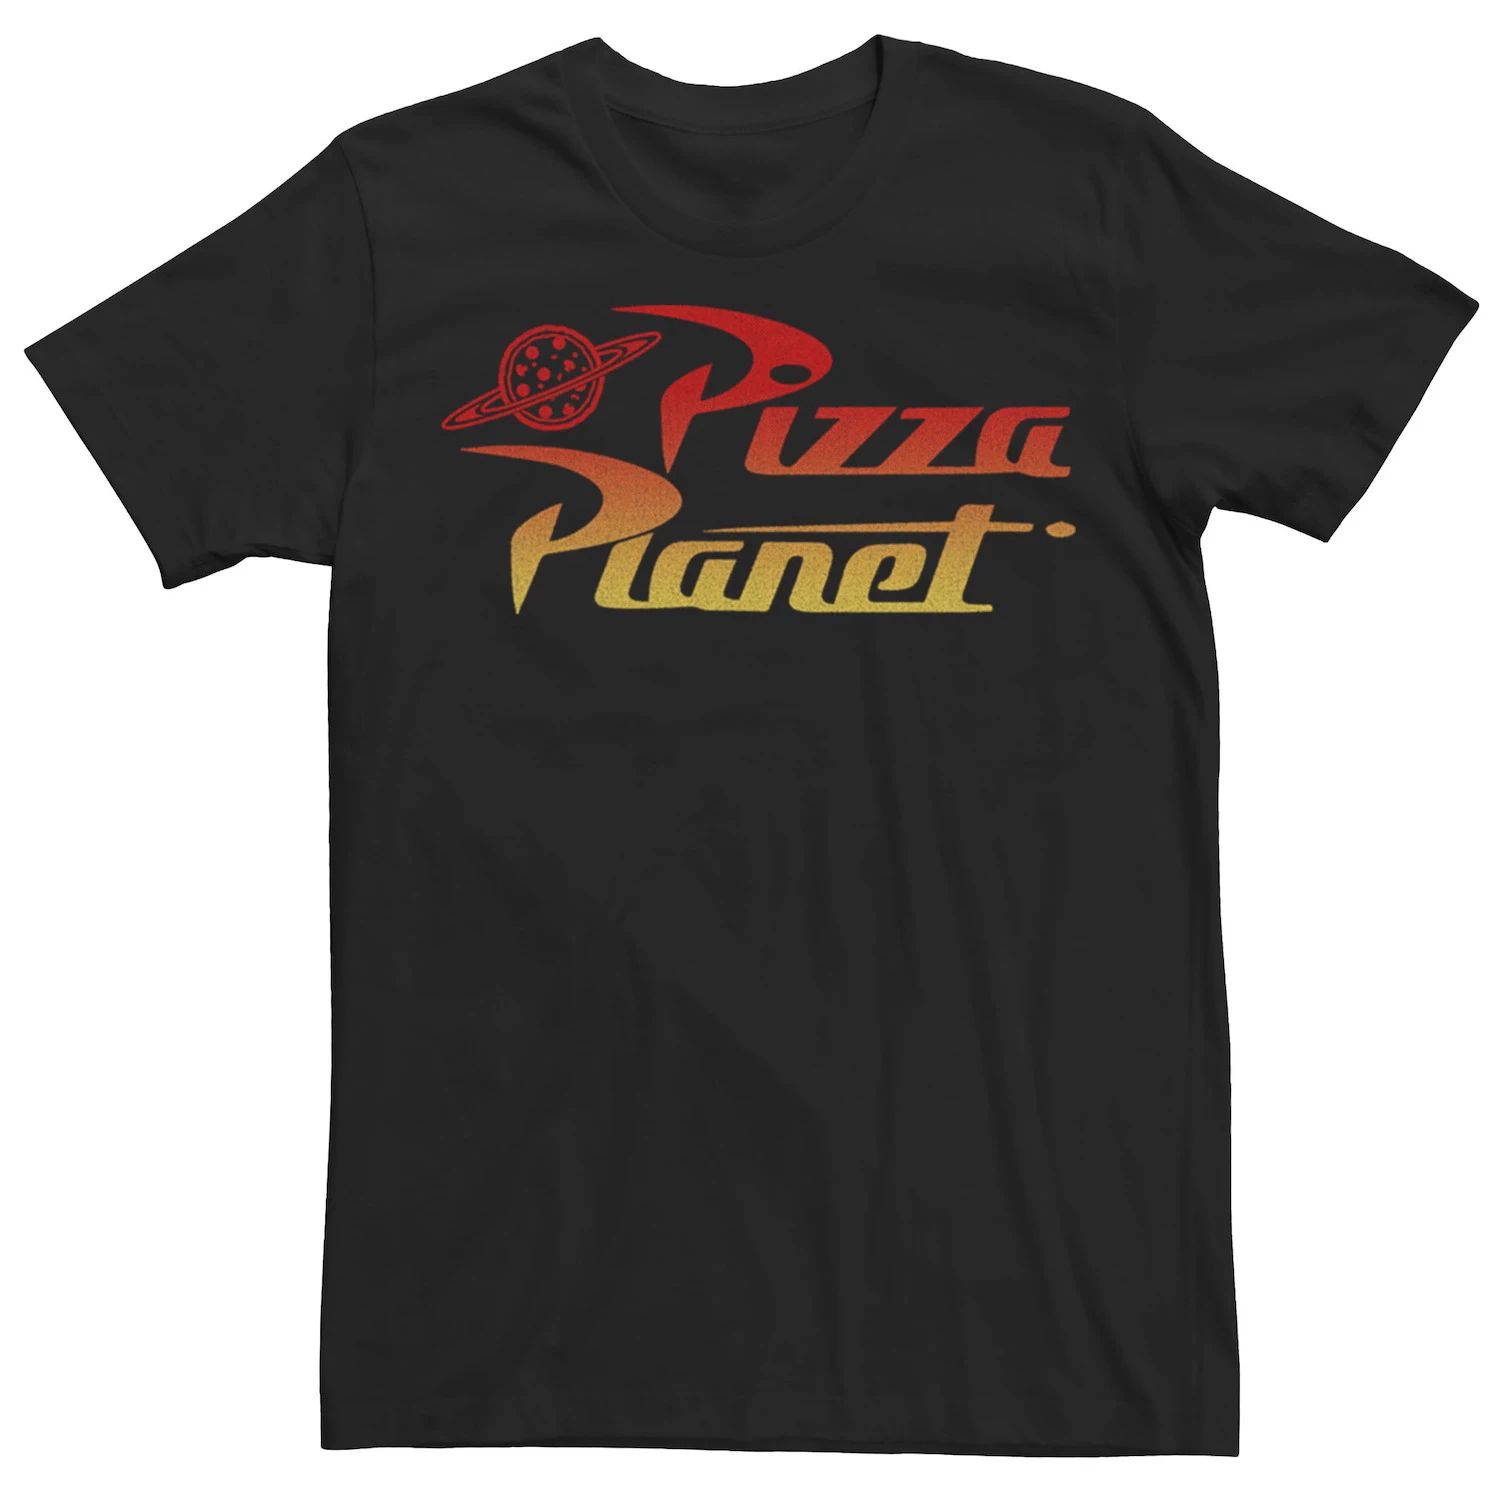 Мужская футболка с градиентным логотипом Disney/Pixar «История игрушек Пицца Планета» Disney / Pixar, черный женская футболка планета пицца l черный